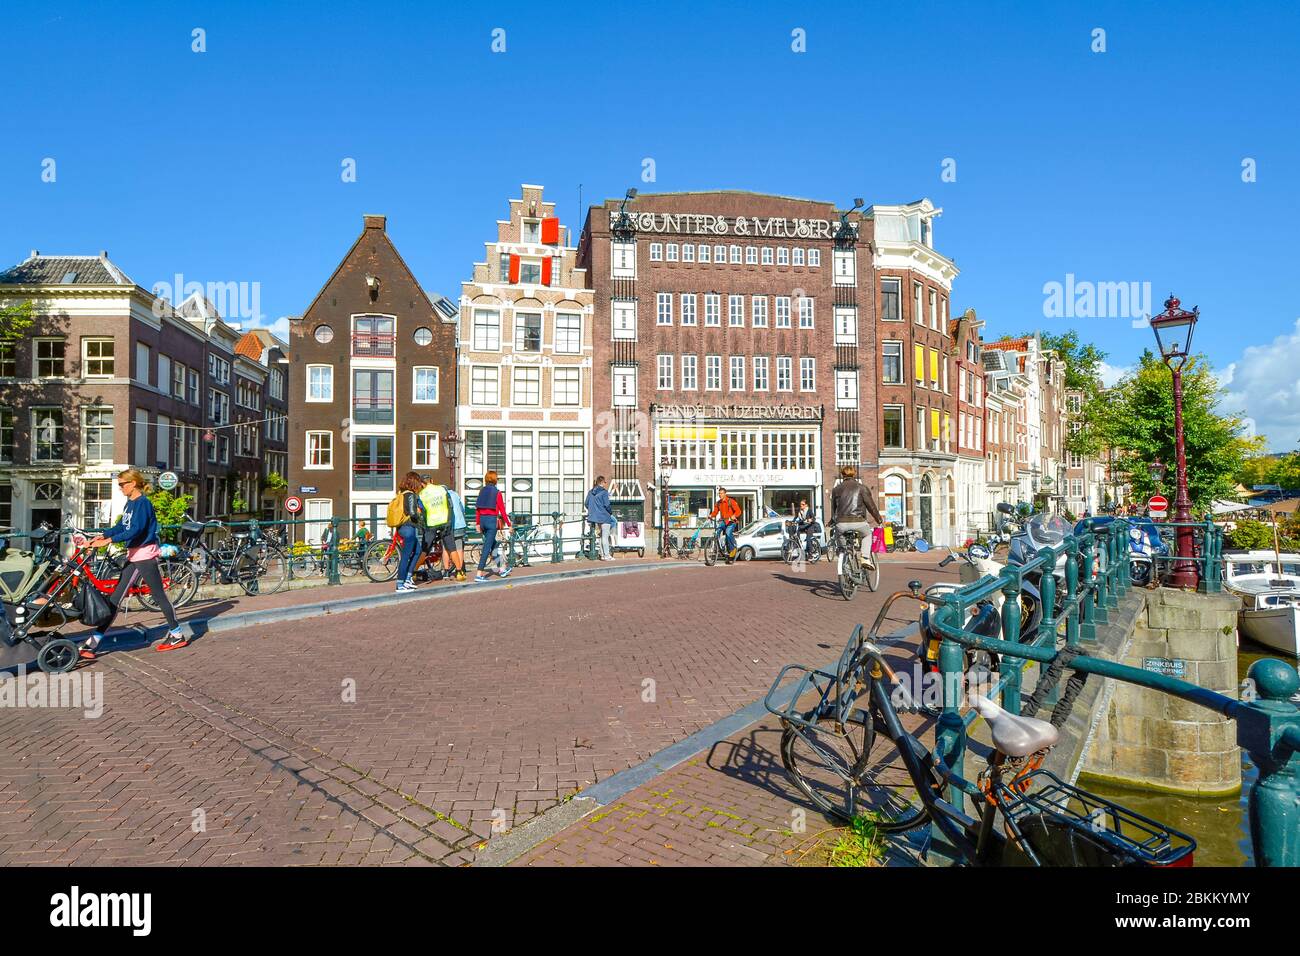 Biciclette parcheggiate lungo un canale vicino alla Chiesa Westerkerk, mentre i turisti e la gente del posto si godono i negozi e i ponti nel centro storico di Amsterdam Nether Foto Stock